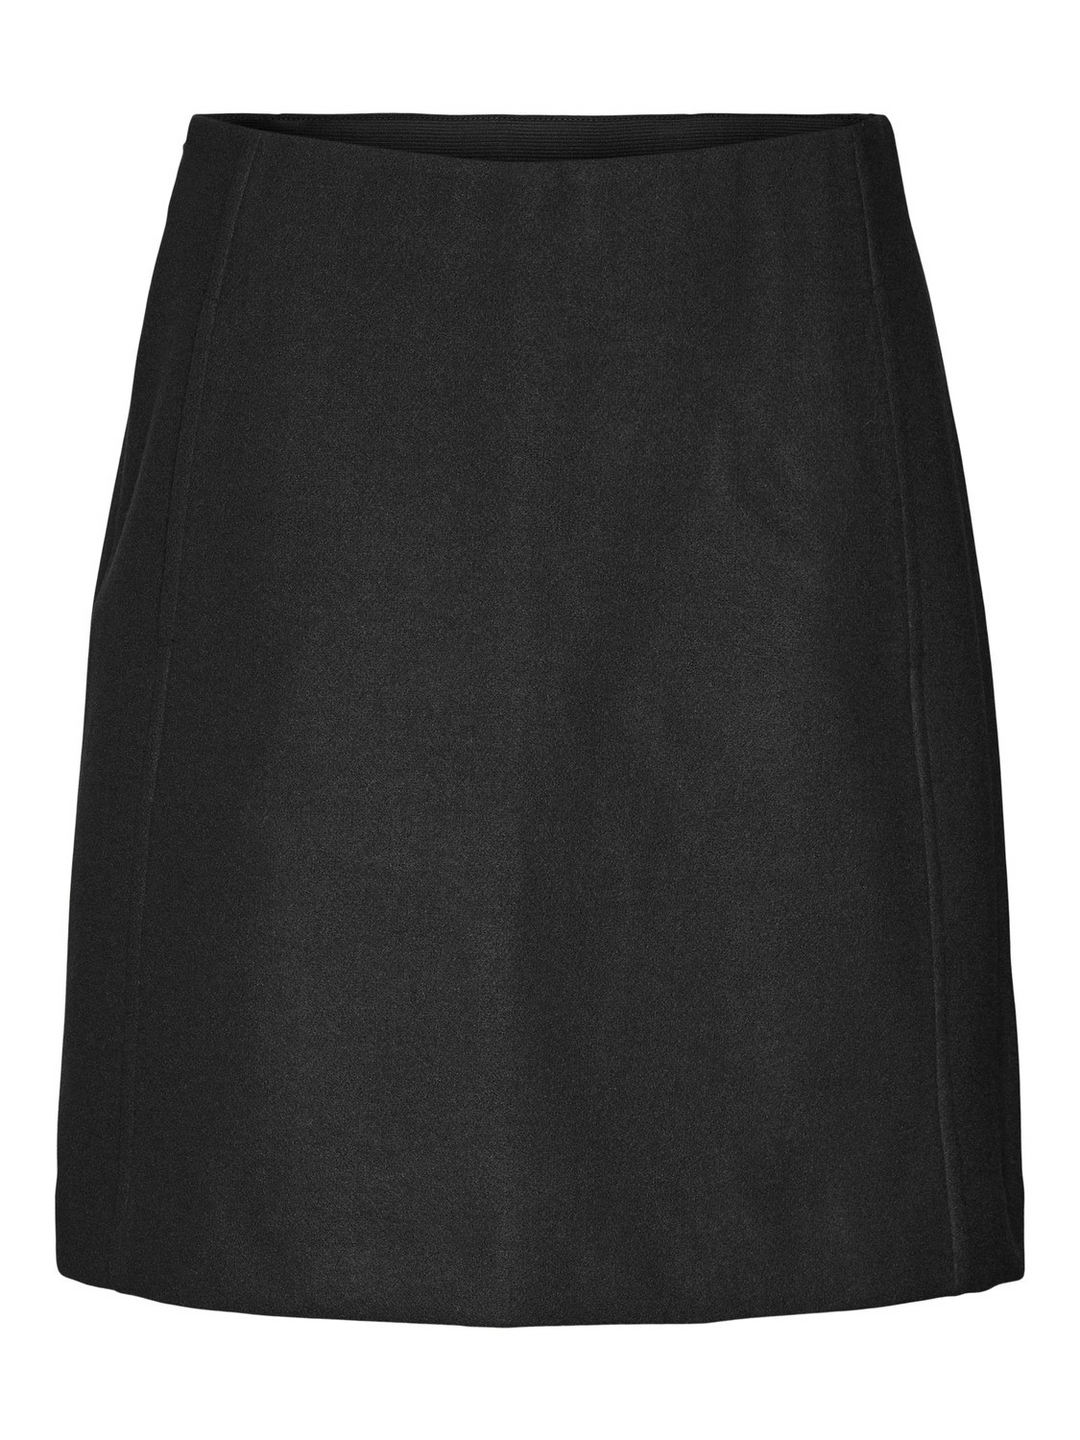 VMFortuneallison Short Skirt